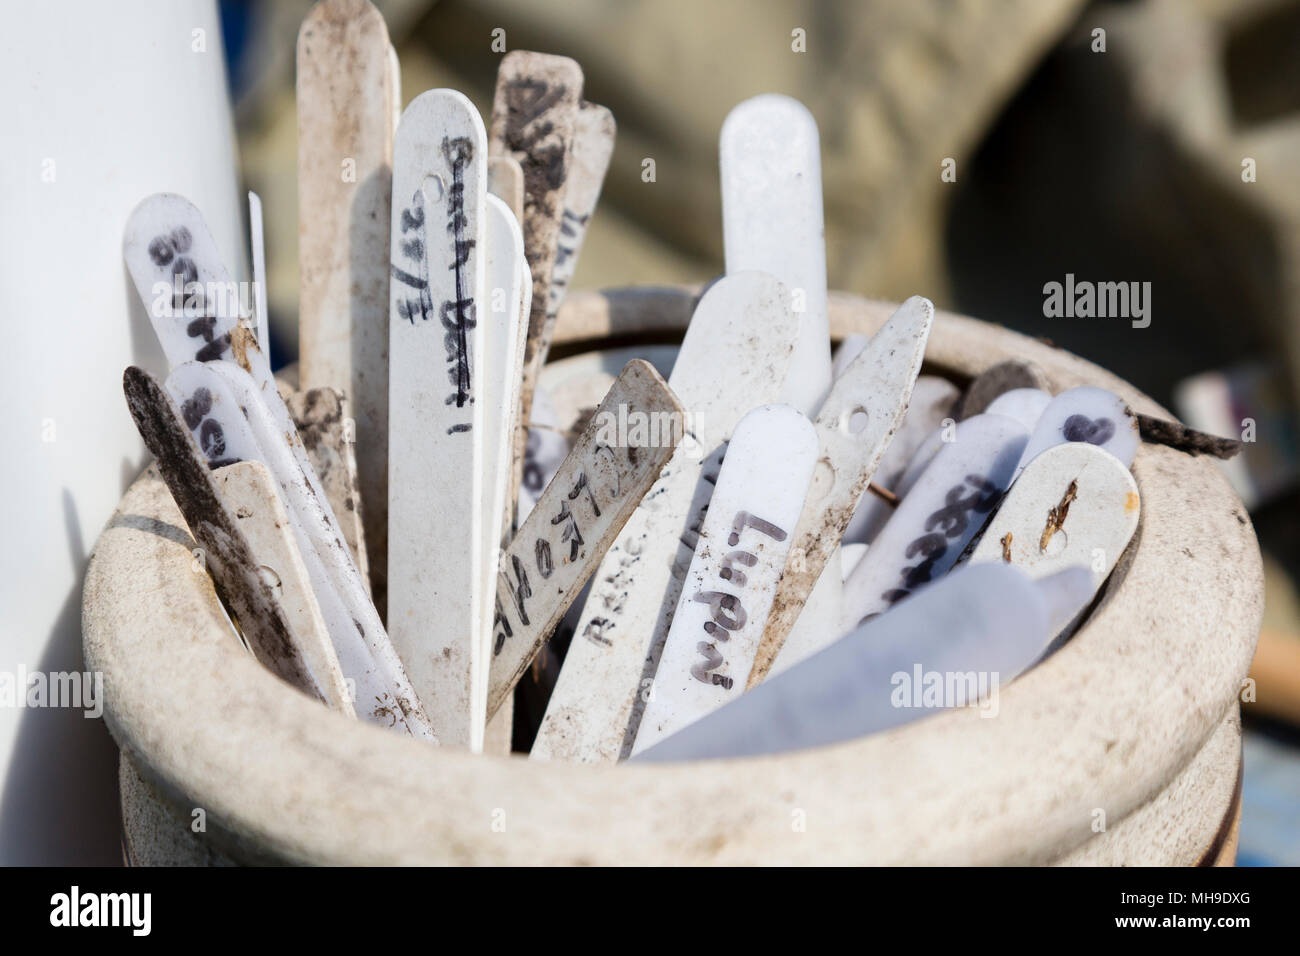 Impianto di etichette e marcatori in un vaso di ceramica Foto Stock